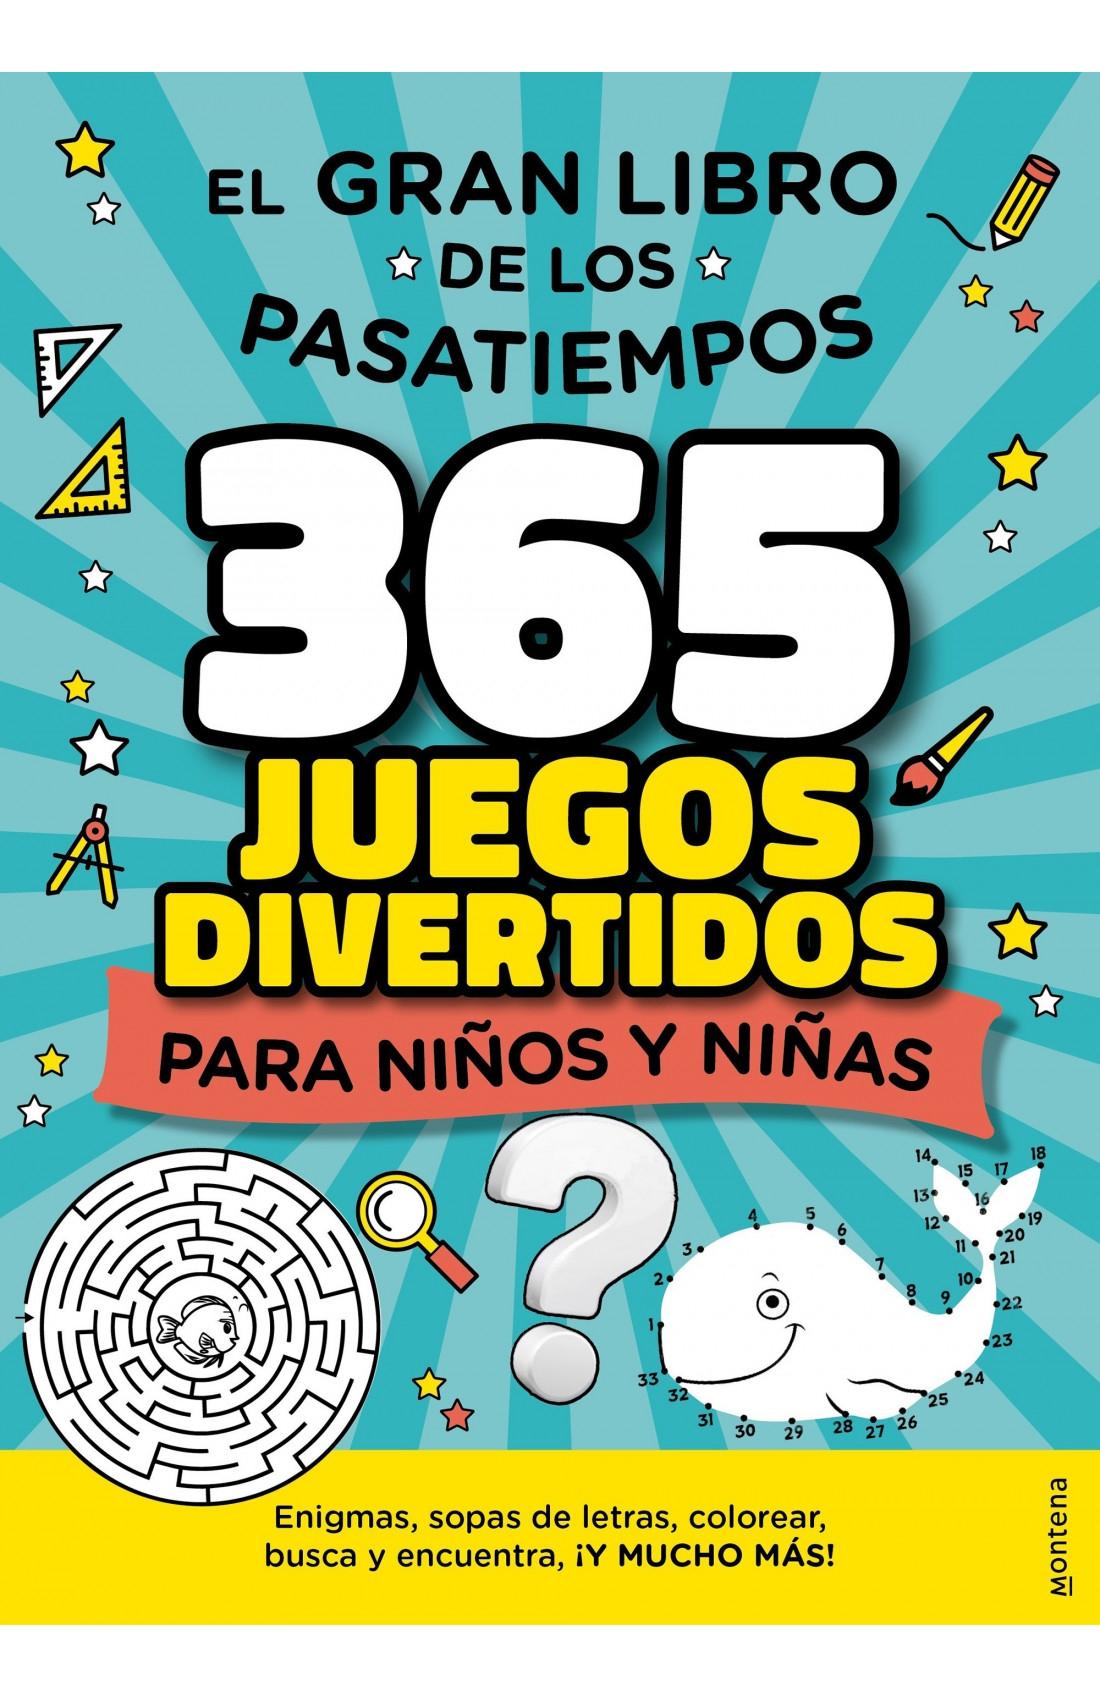 EL GRAN LIBRO DE LOS PASATIEMPOS "365 JUEGOS DIVERTIDOS PARA NIÑOS Y NIÑAS". 